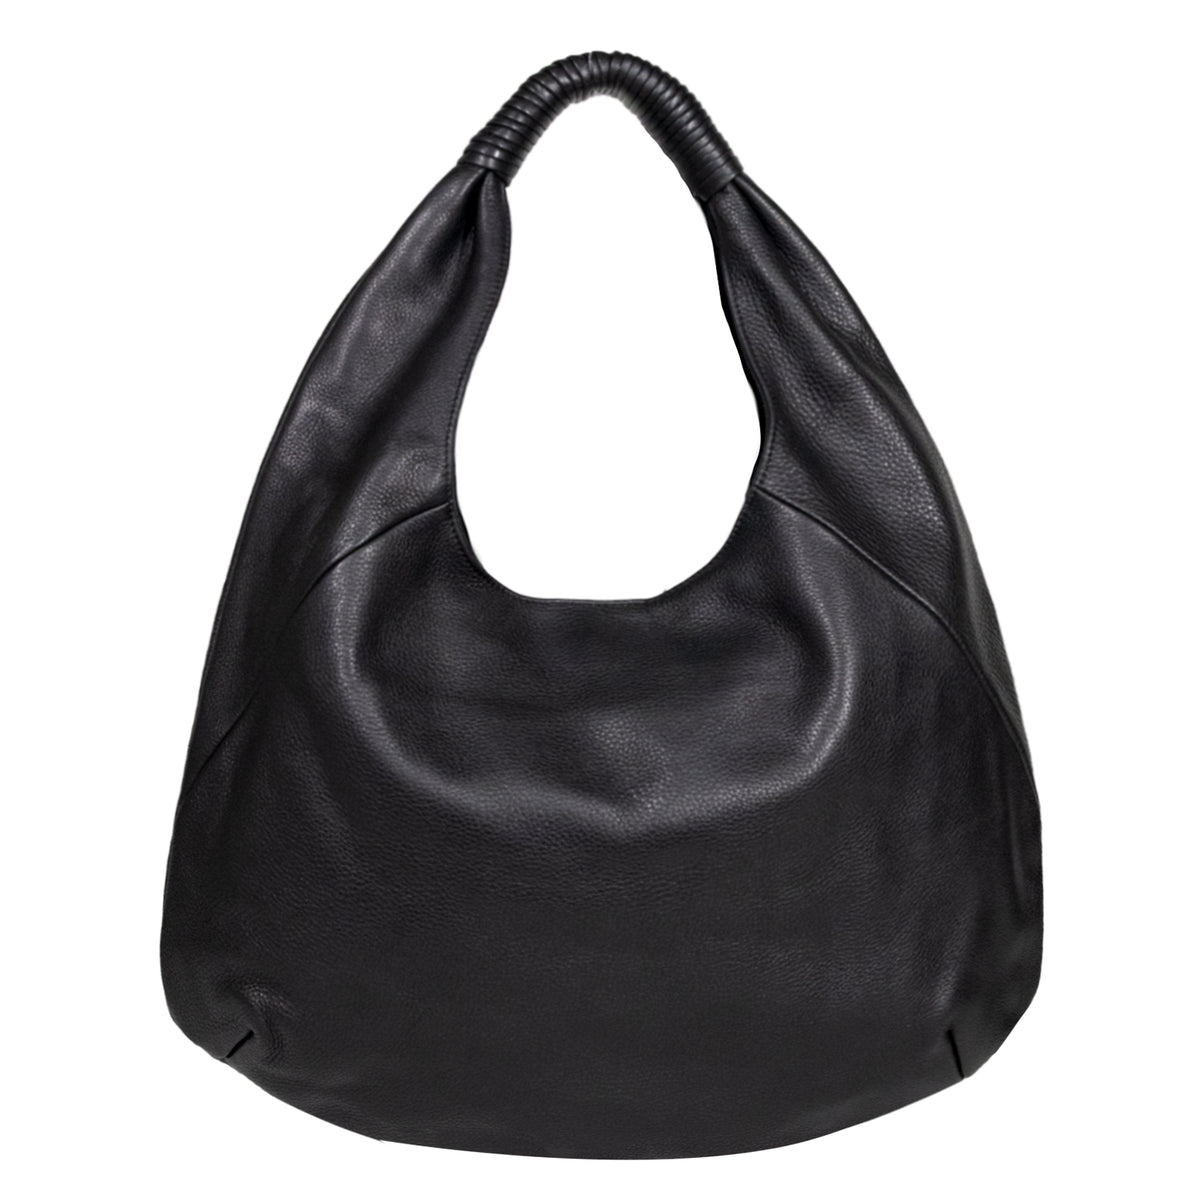 Black Leather Bag Black Leather Hobo Soft Leather Bag 